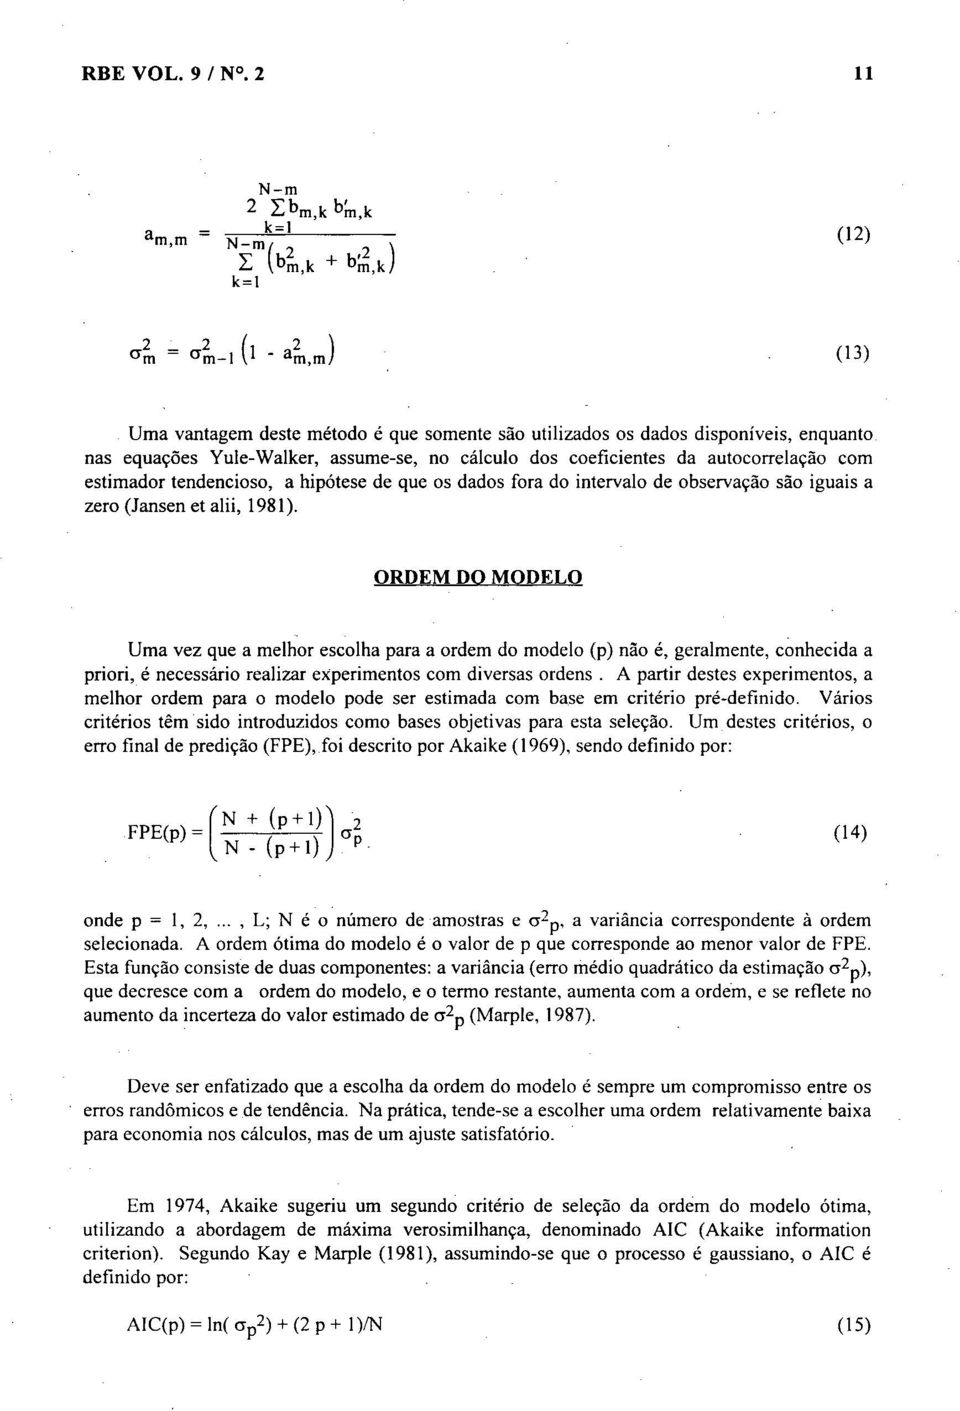 dos coeficientes da autocorrelação com estimador tendencioso, a hipótese de que os dados fora do intervalo de observação são iguais a zero (Jansen et alii, 1981).